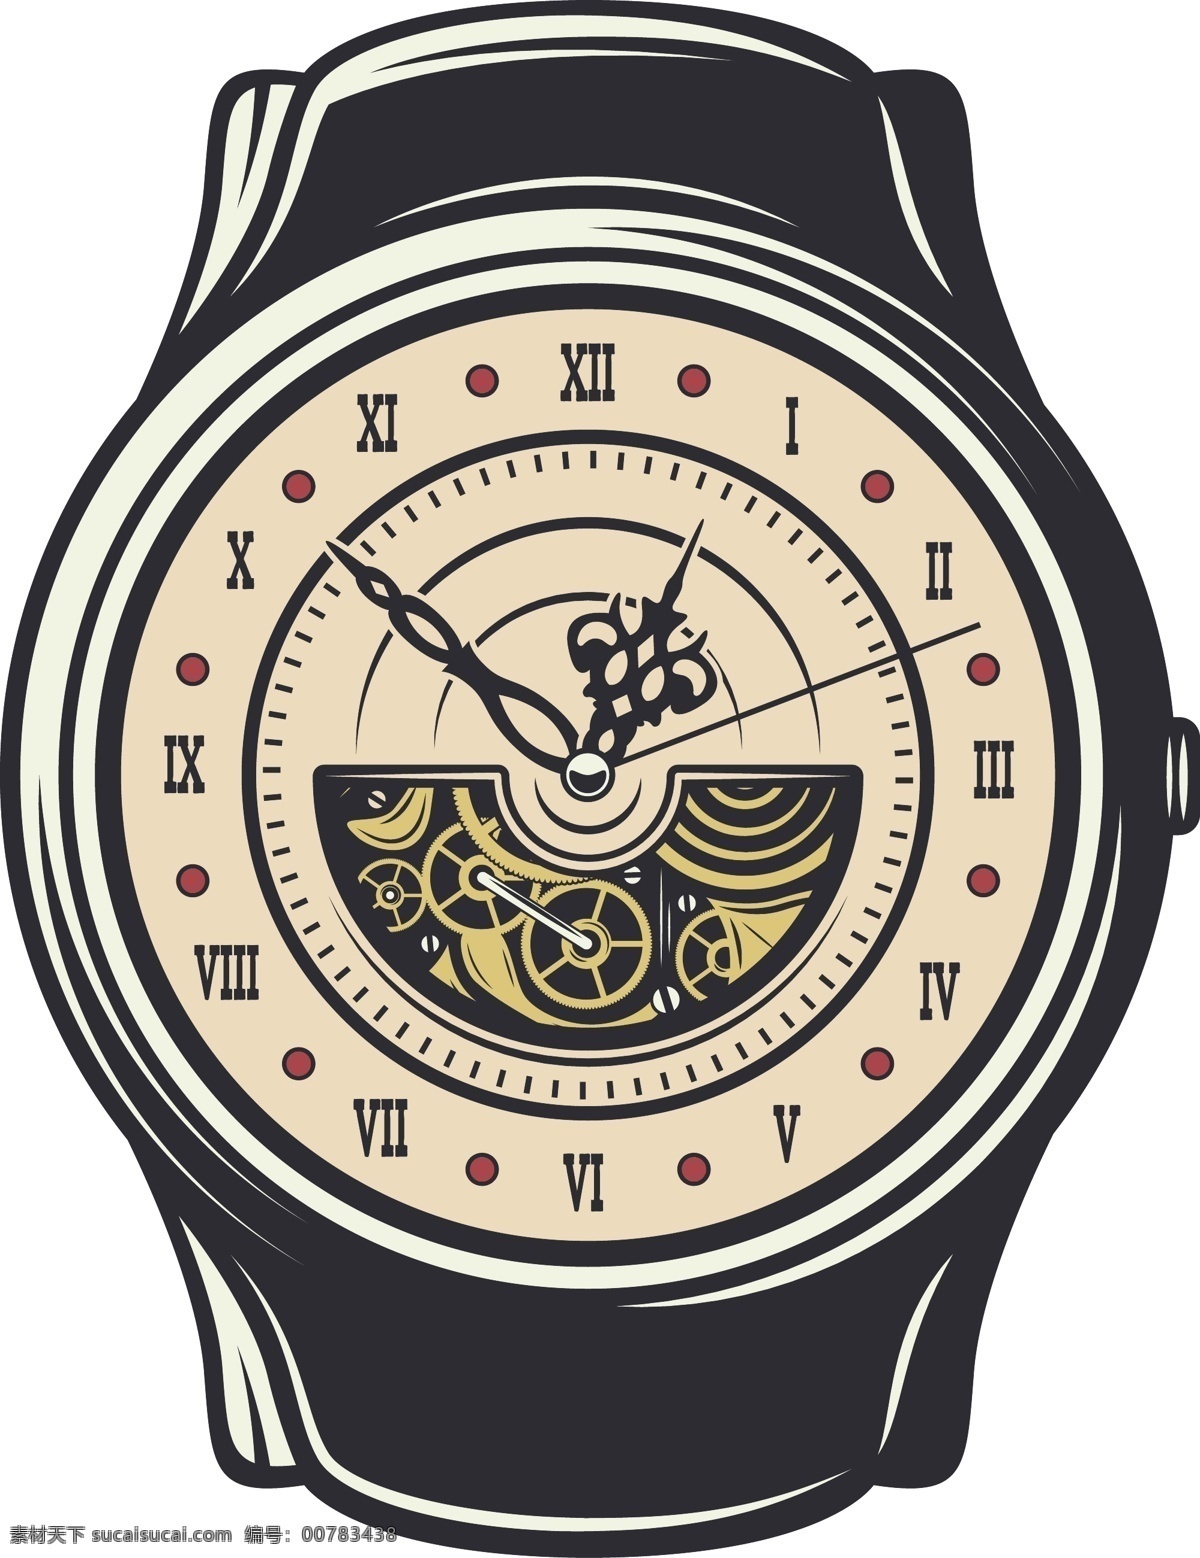 钟表图片 手表 钟表 时间 效率 闹钟 时针 分针 秒针 插图 手绘 插画 ai矢量